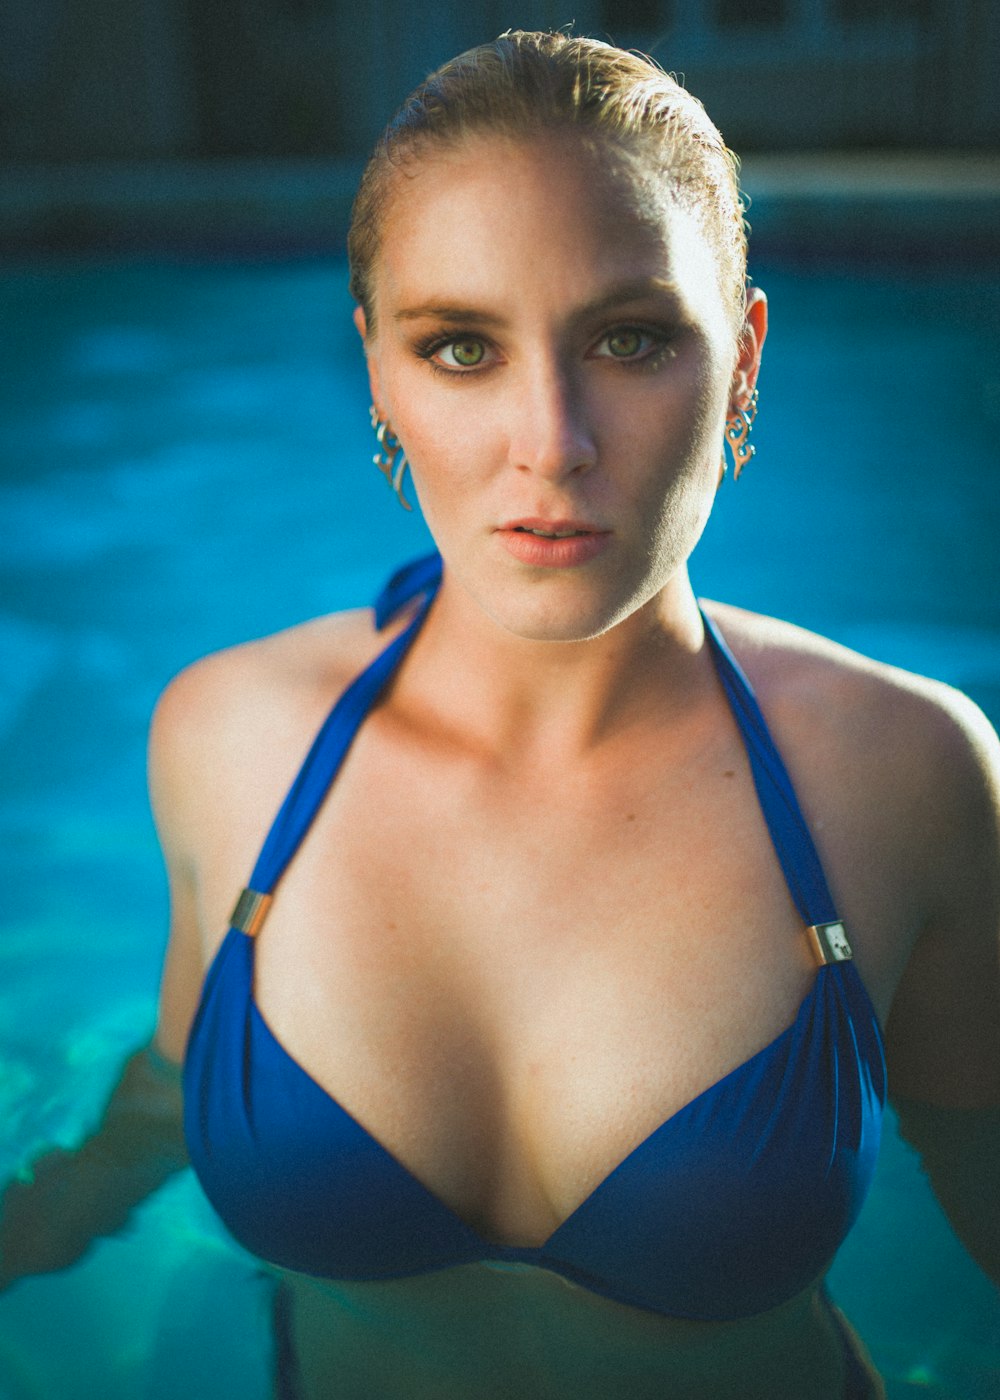 geleidelijk studio Vlekkeloos woman in blue string bikini top in pool looking straight photo – Free Girl  Image on Unsplash